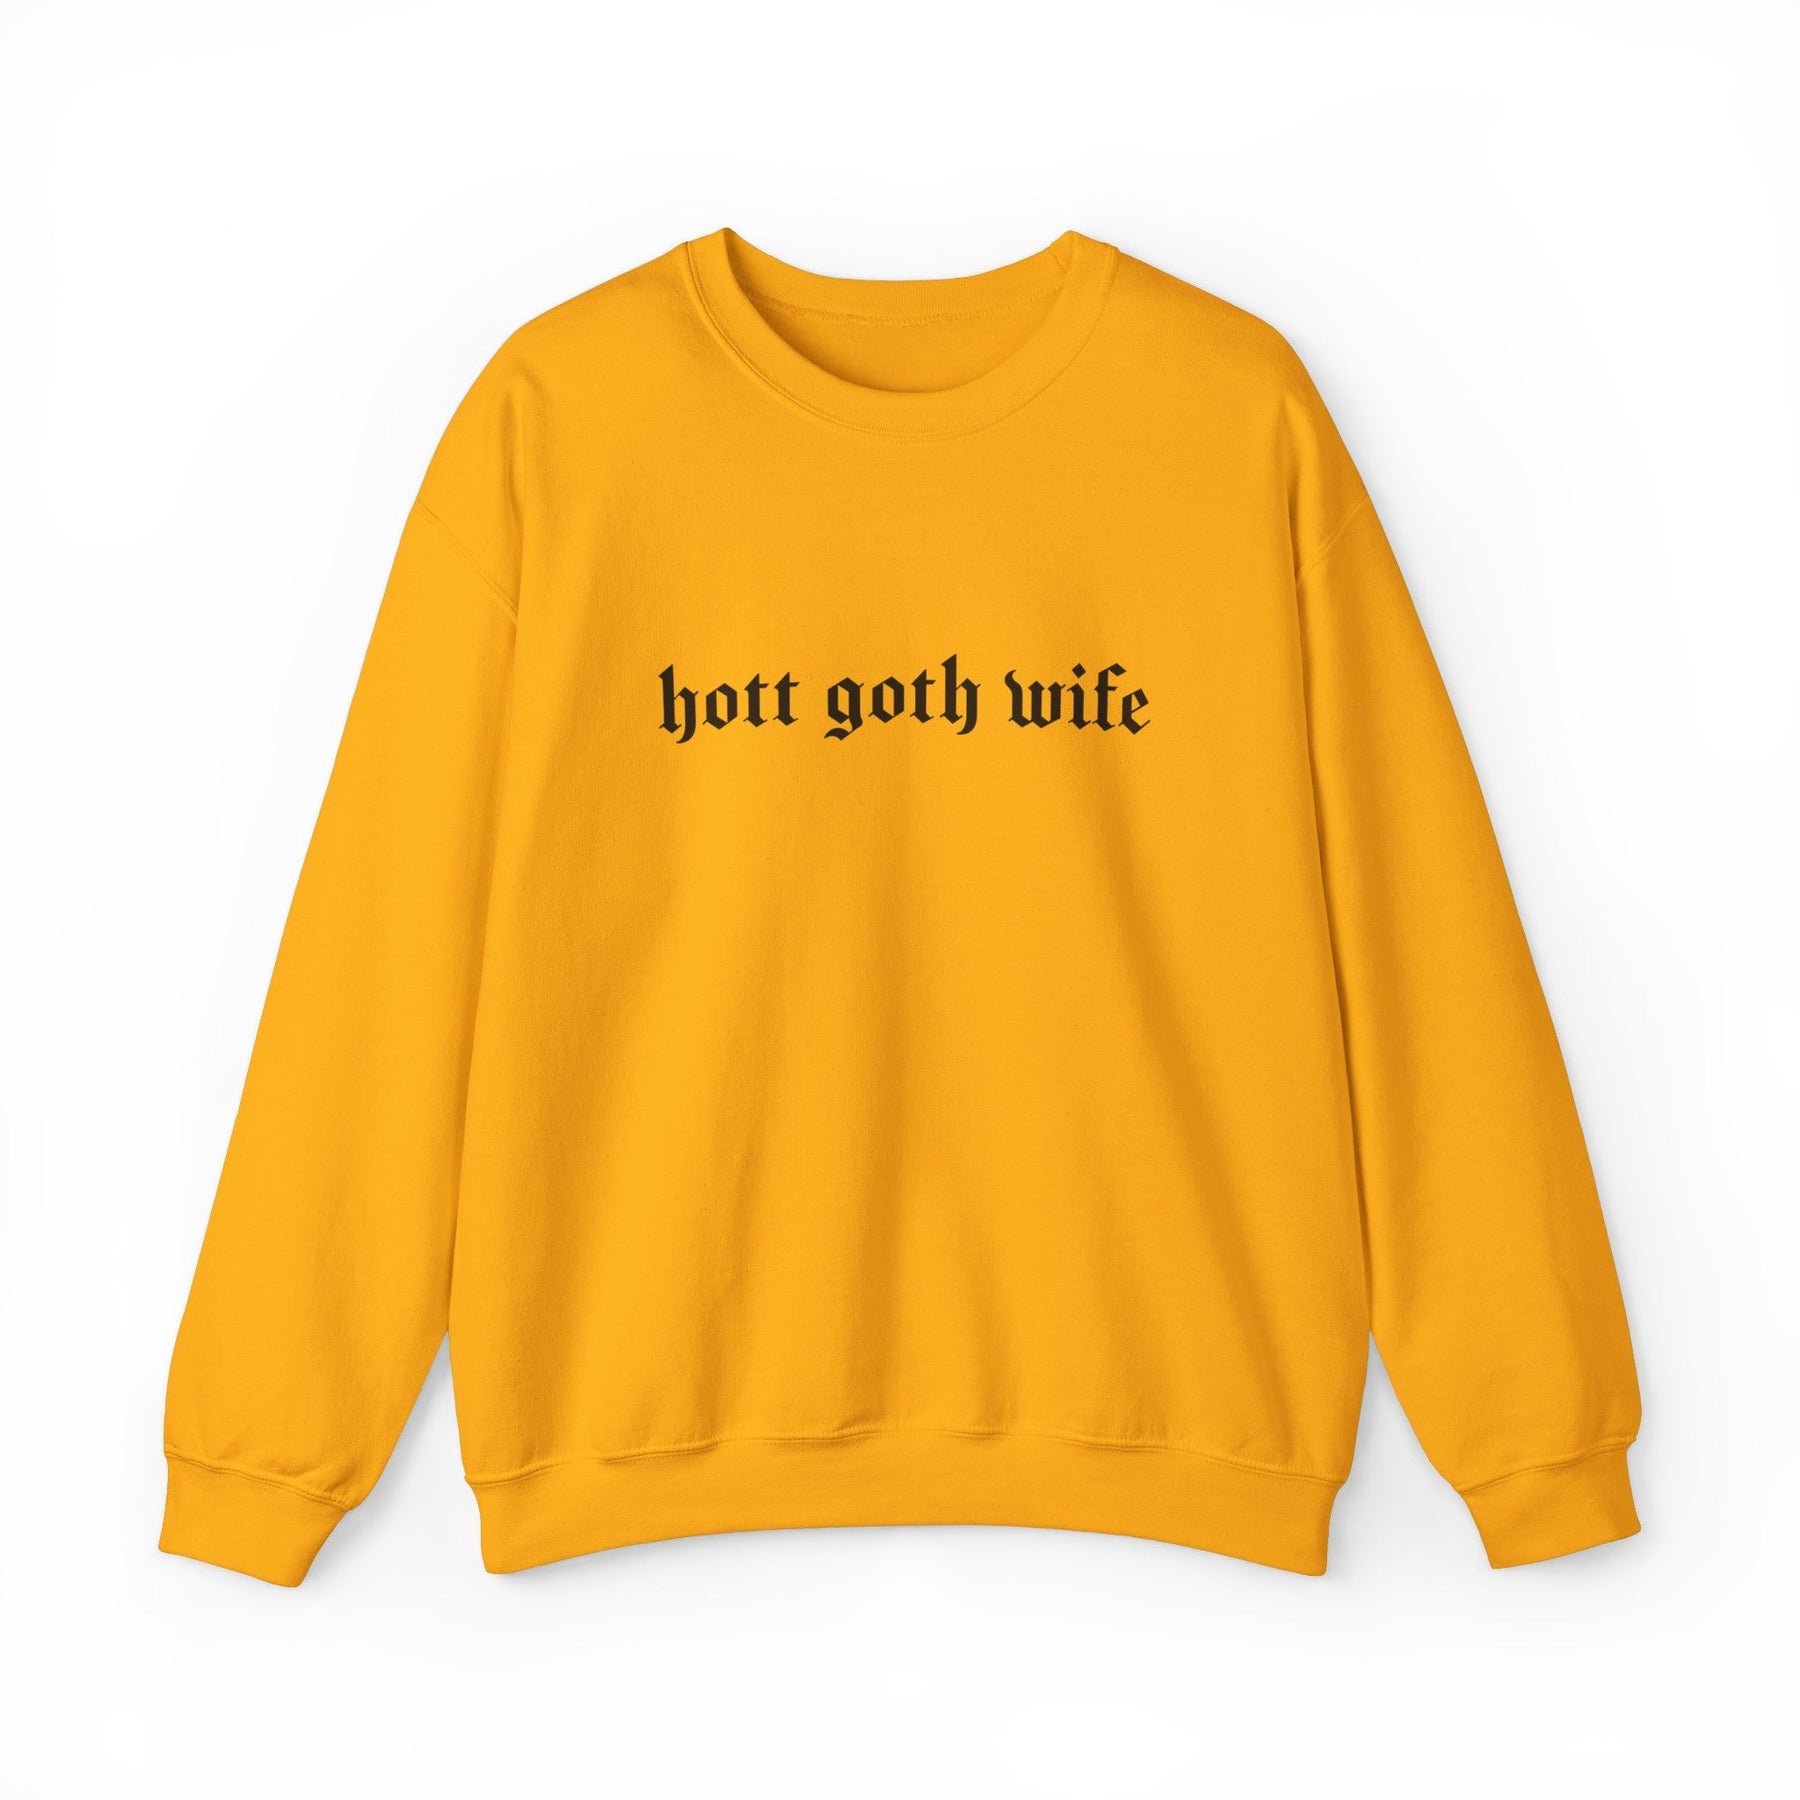 Hott Goth Wife Long Sleeve Crew Neck Sweatshirt - Goth Cloth Co.Sweatshirt26510684863594318445